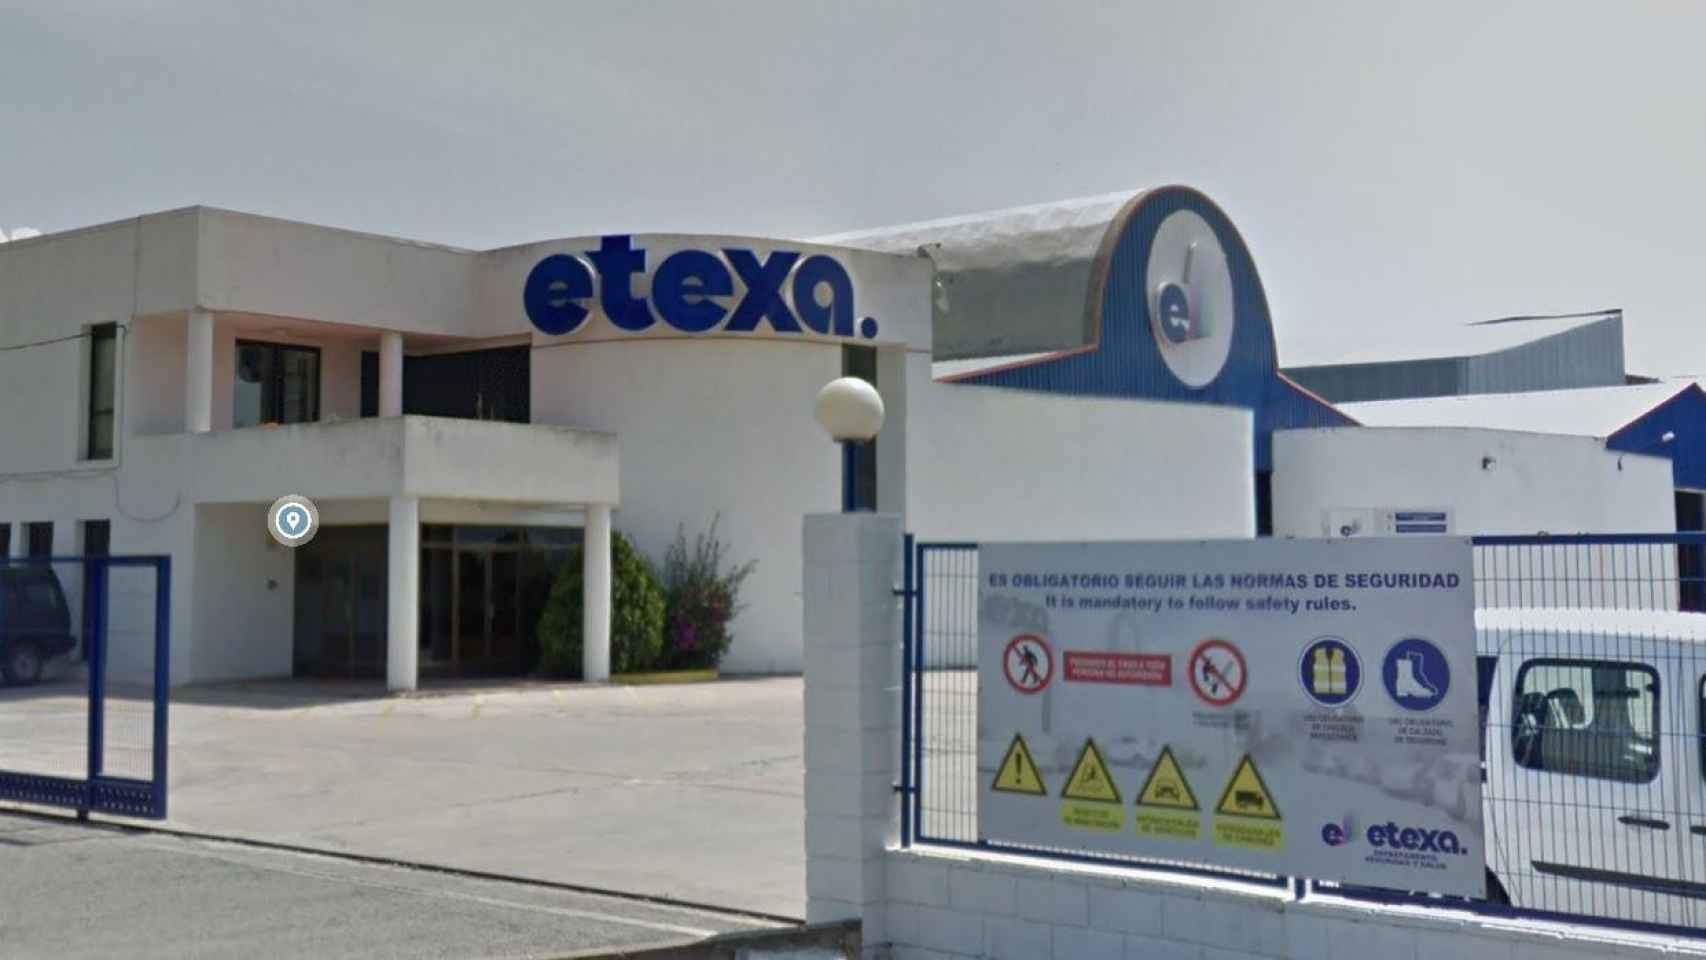 Fábrica de Etexa, filial de Hispano Tex, en Agullent (Valencia) / CG